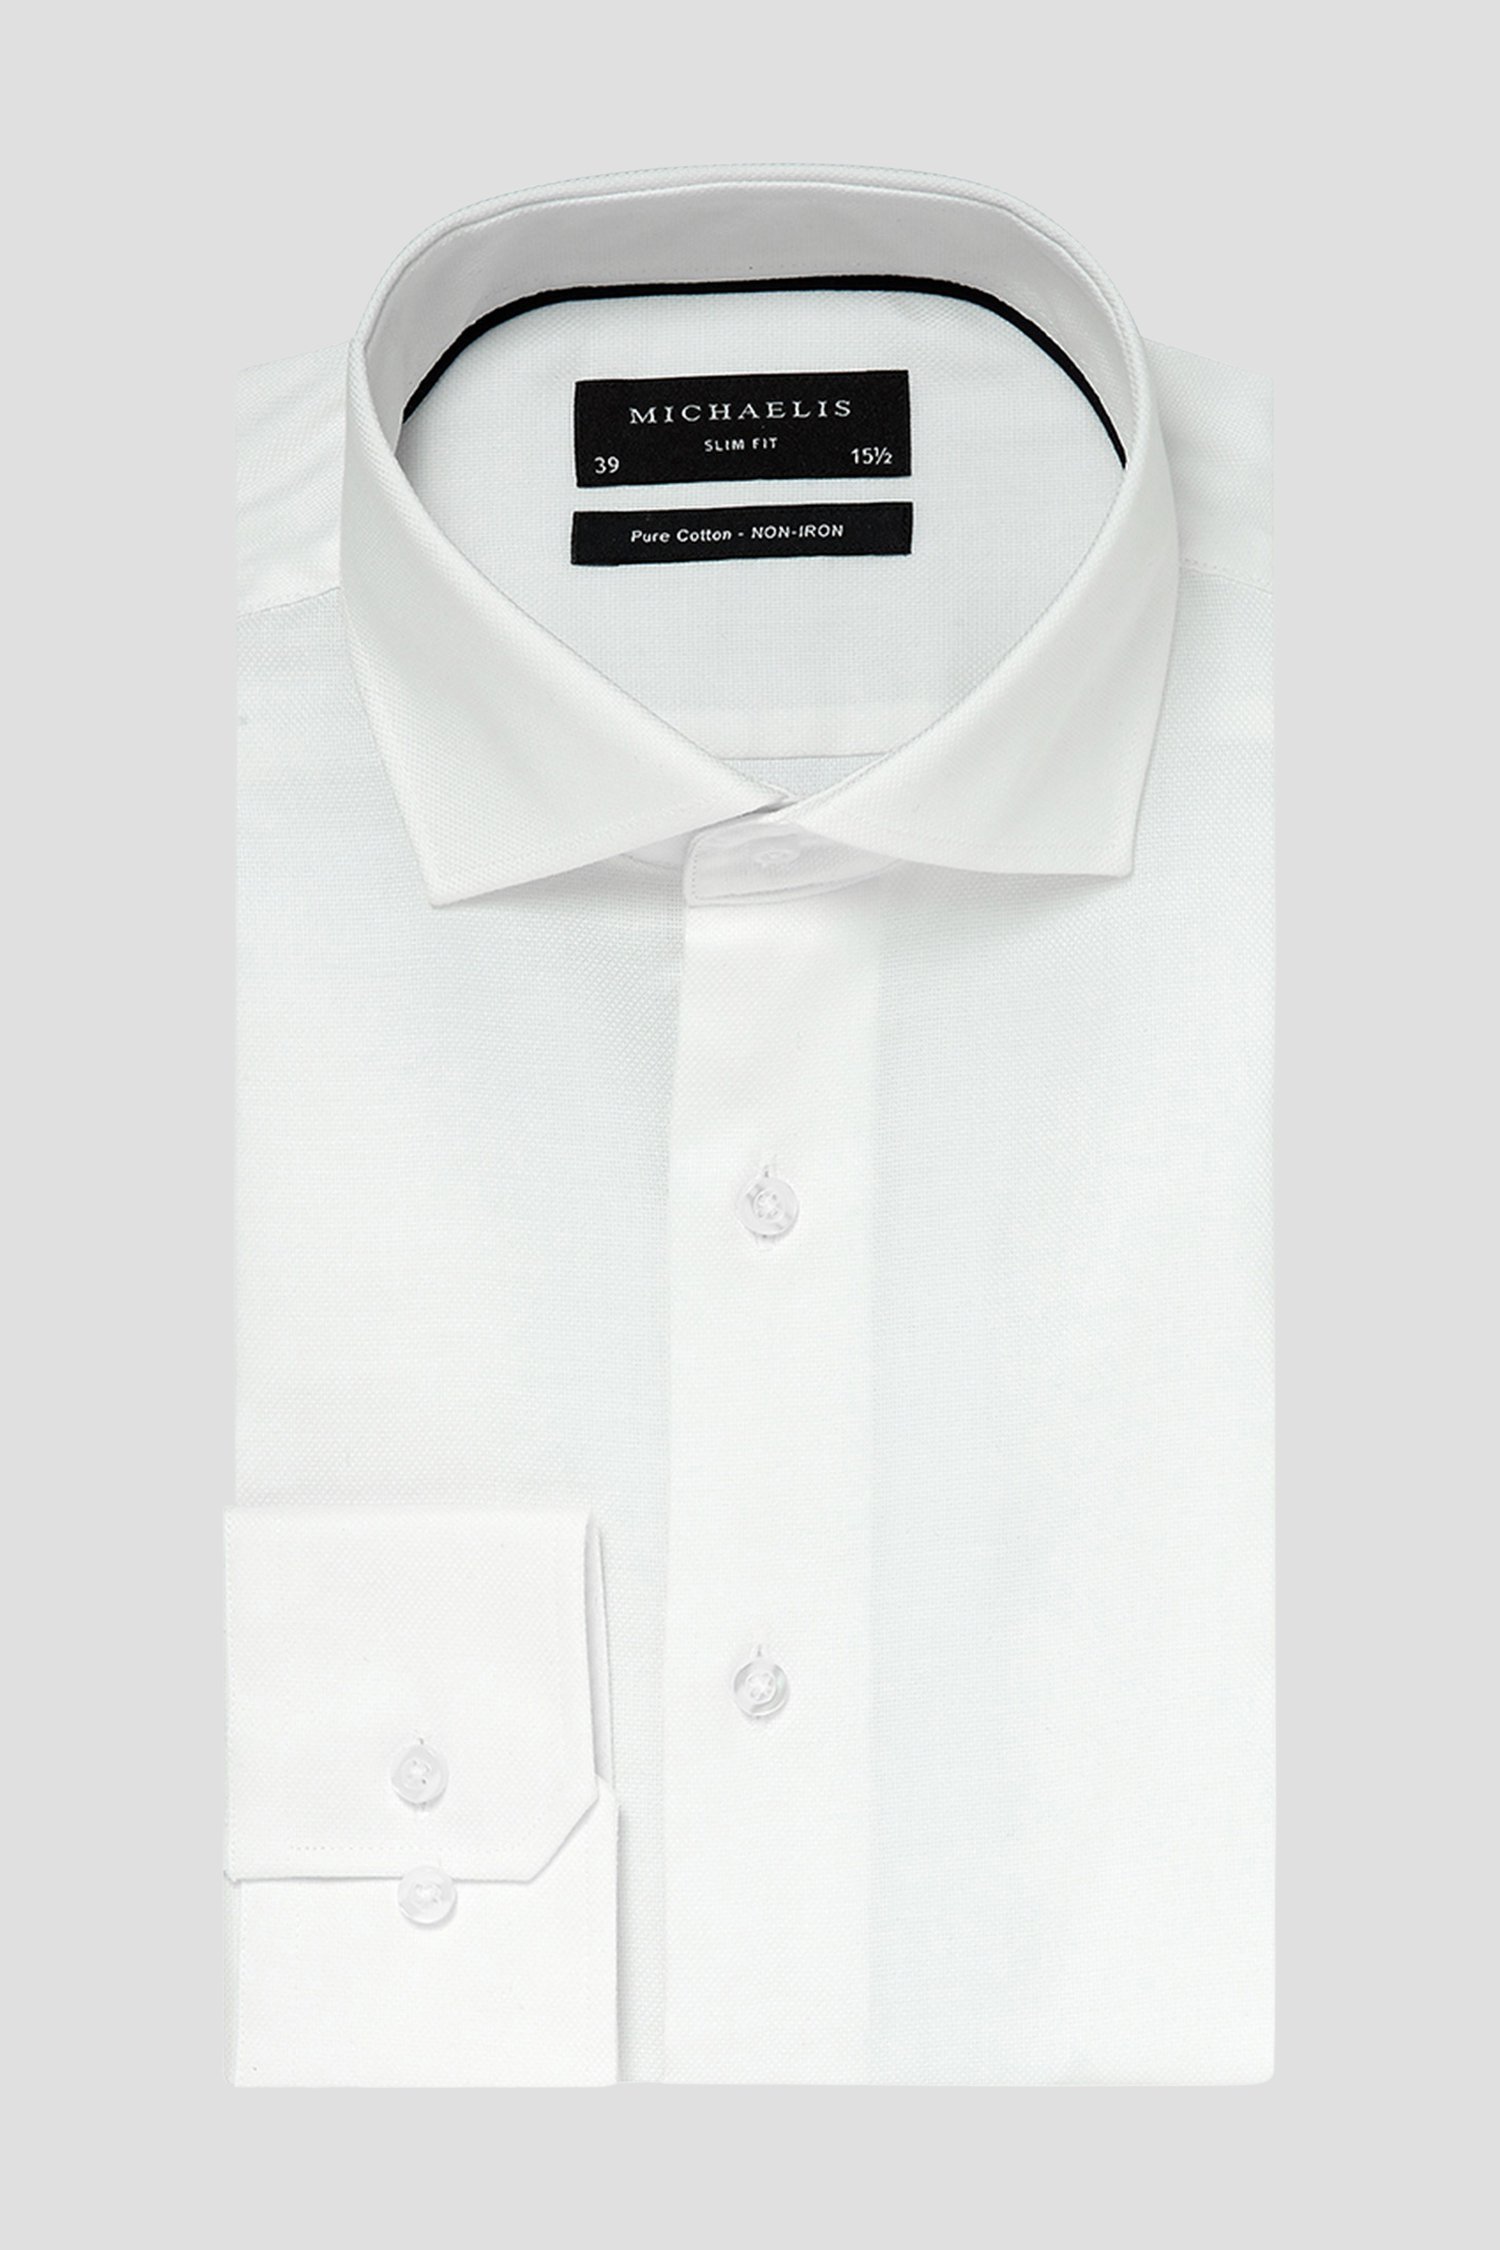 Chemise blanche en tissu texturé - Slim fit
 de Michaelis pour Hommes